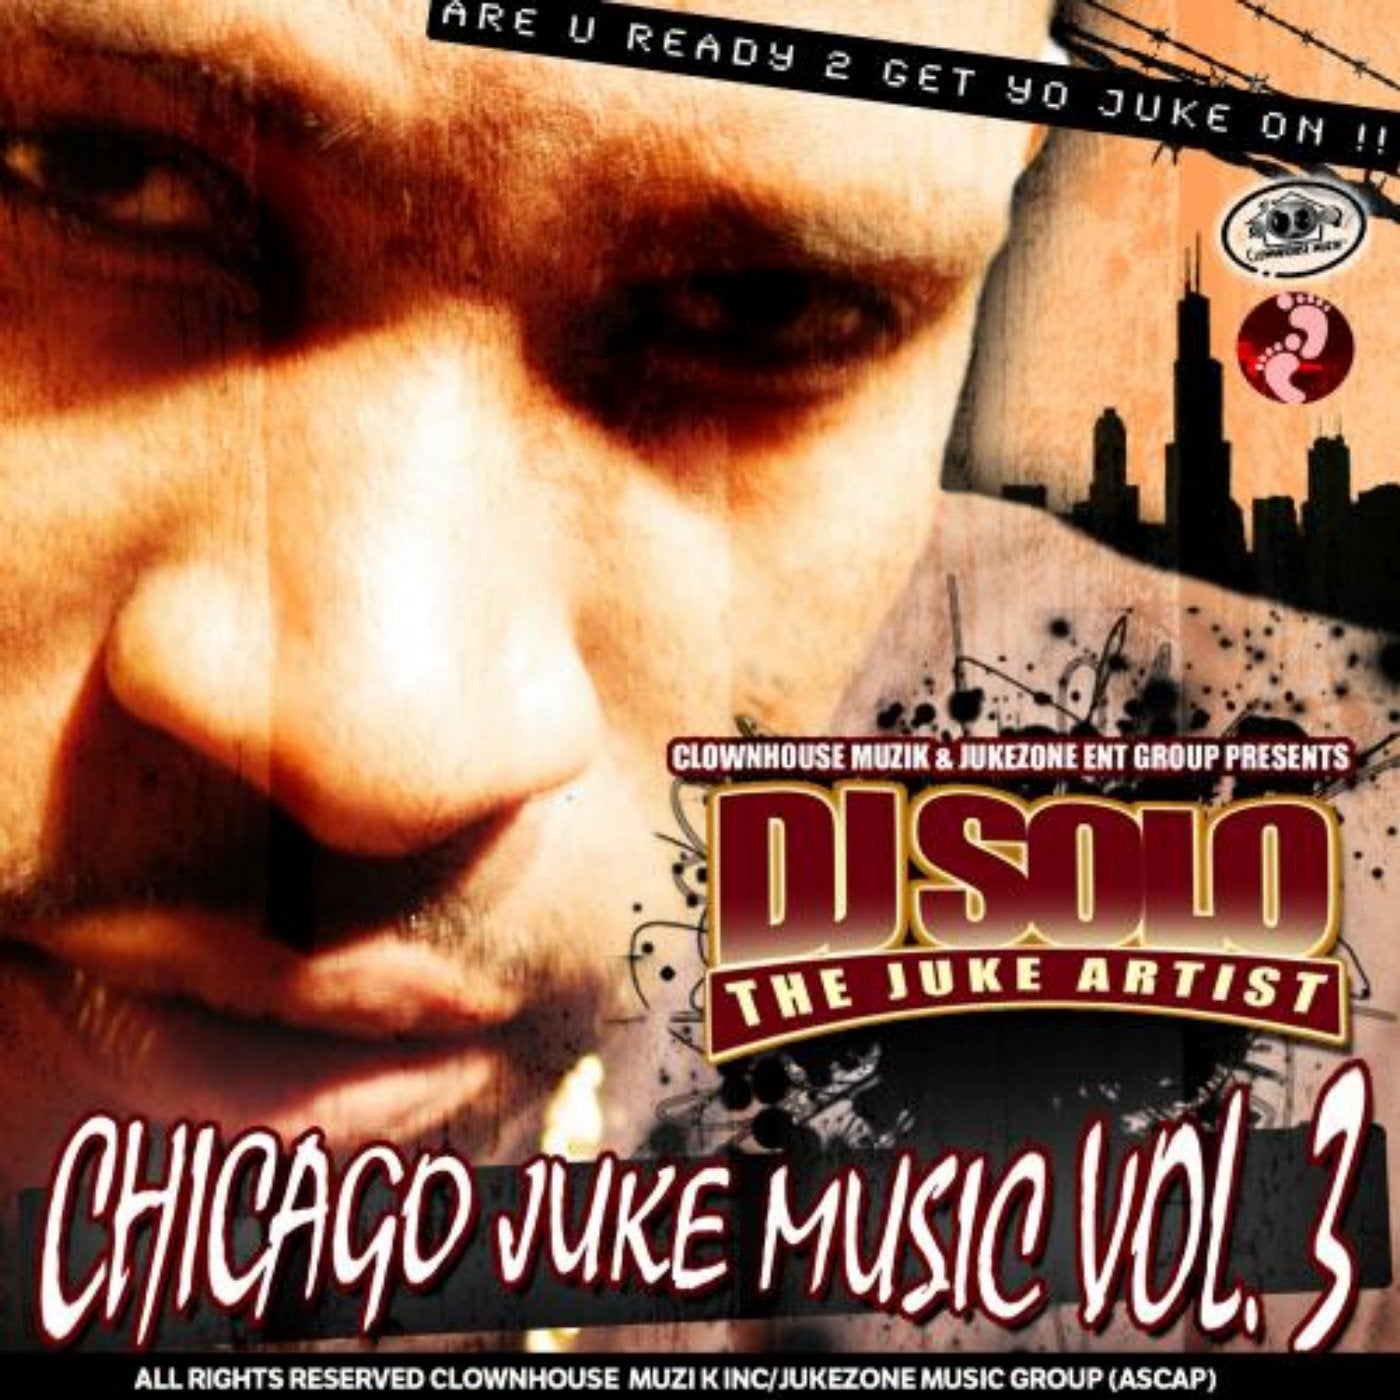 Chicago Juke Music, Vol. 3